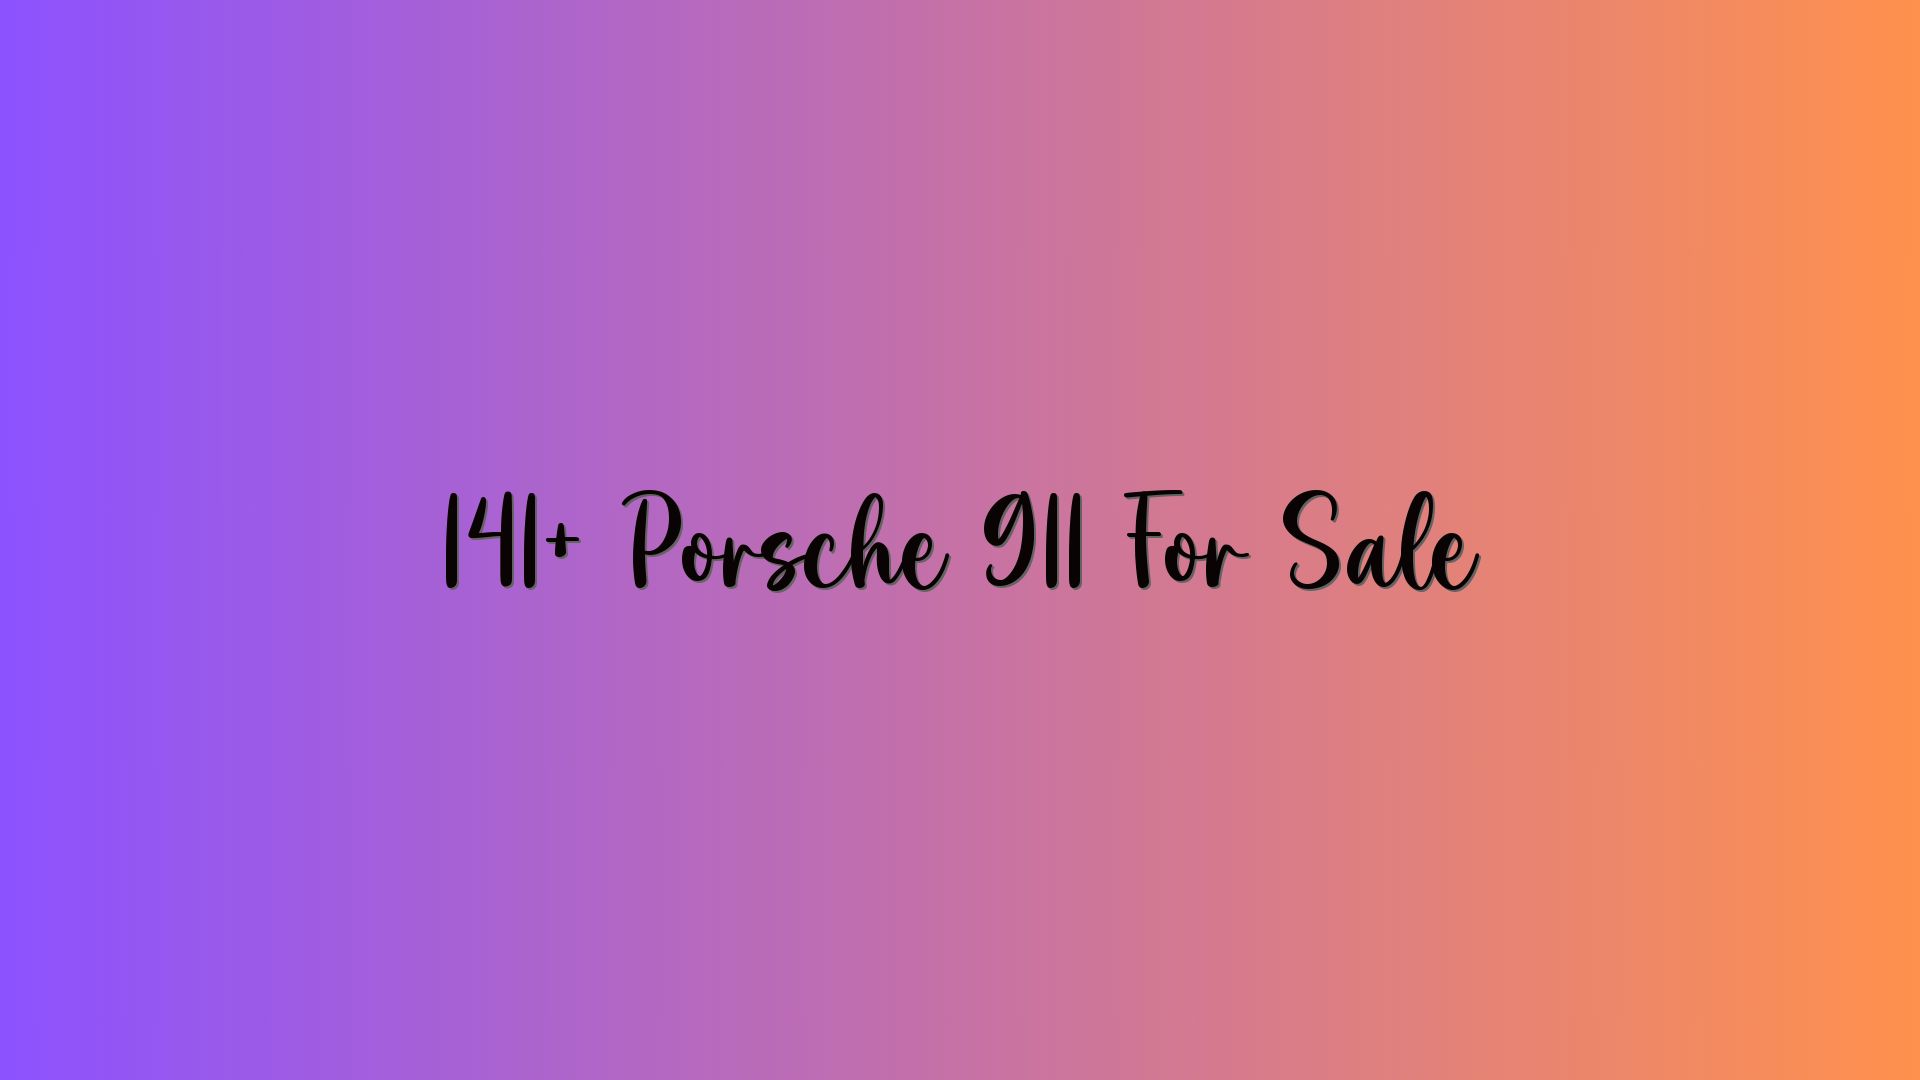 141+ Porsche 911 For Sale